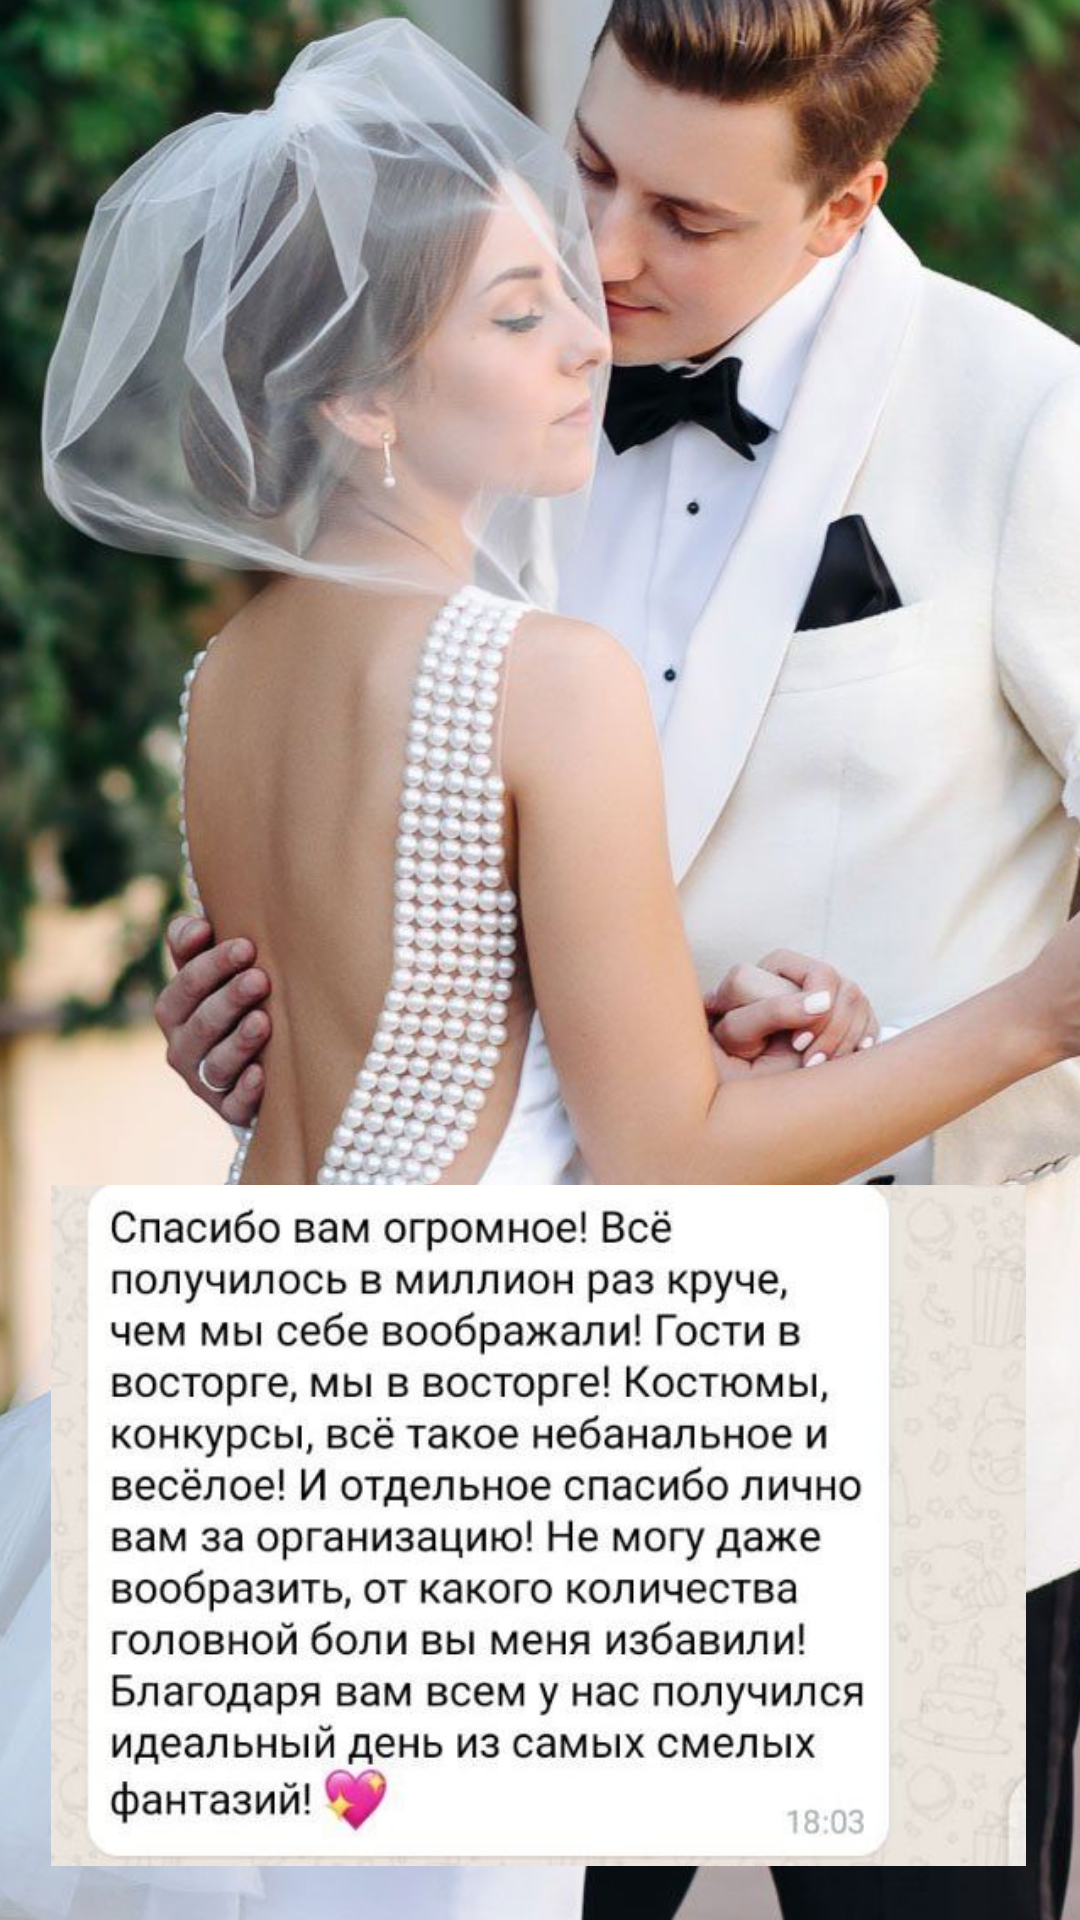 Организация свадьбы в Ставрополе
от компании Pandaevent